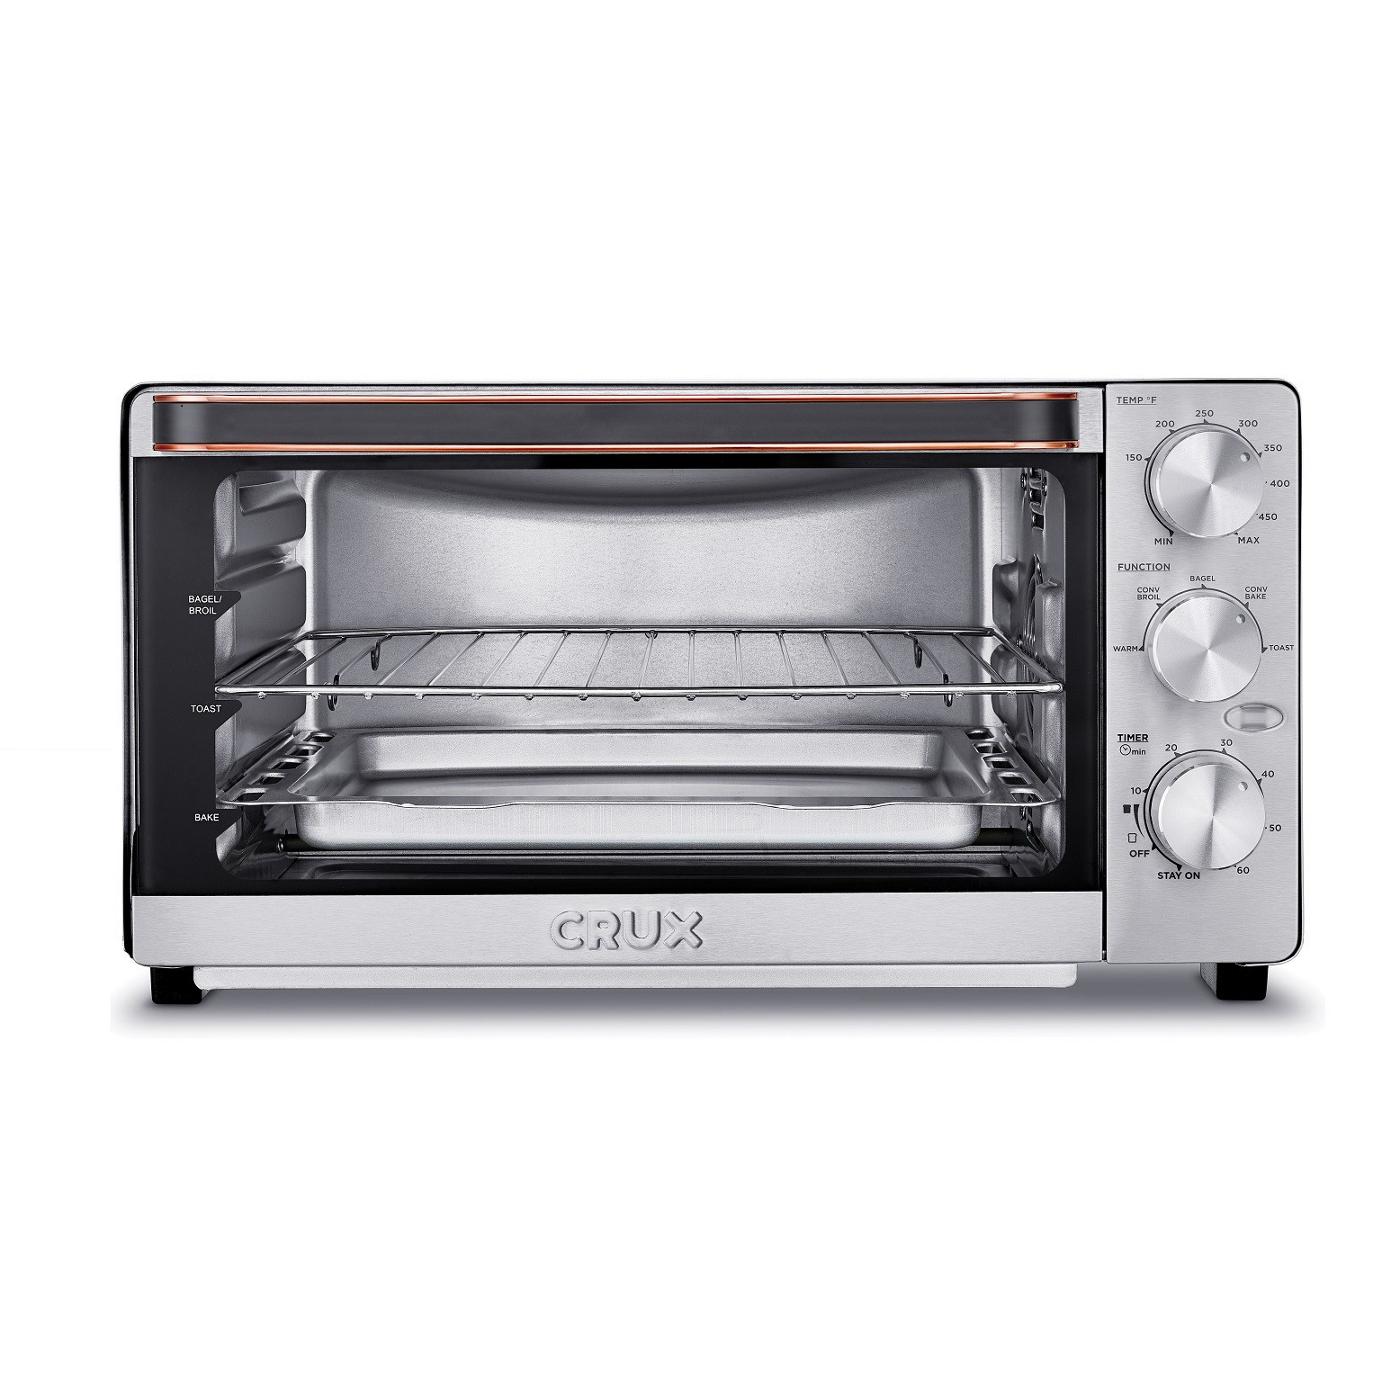 Kalorik MAXX Digital Air Fryer Oven - Shop Toasters at H-E-B